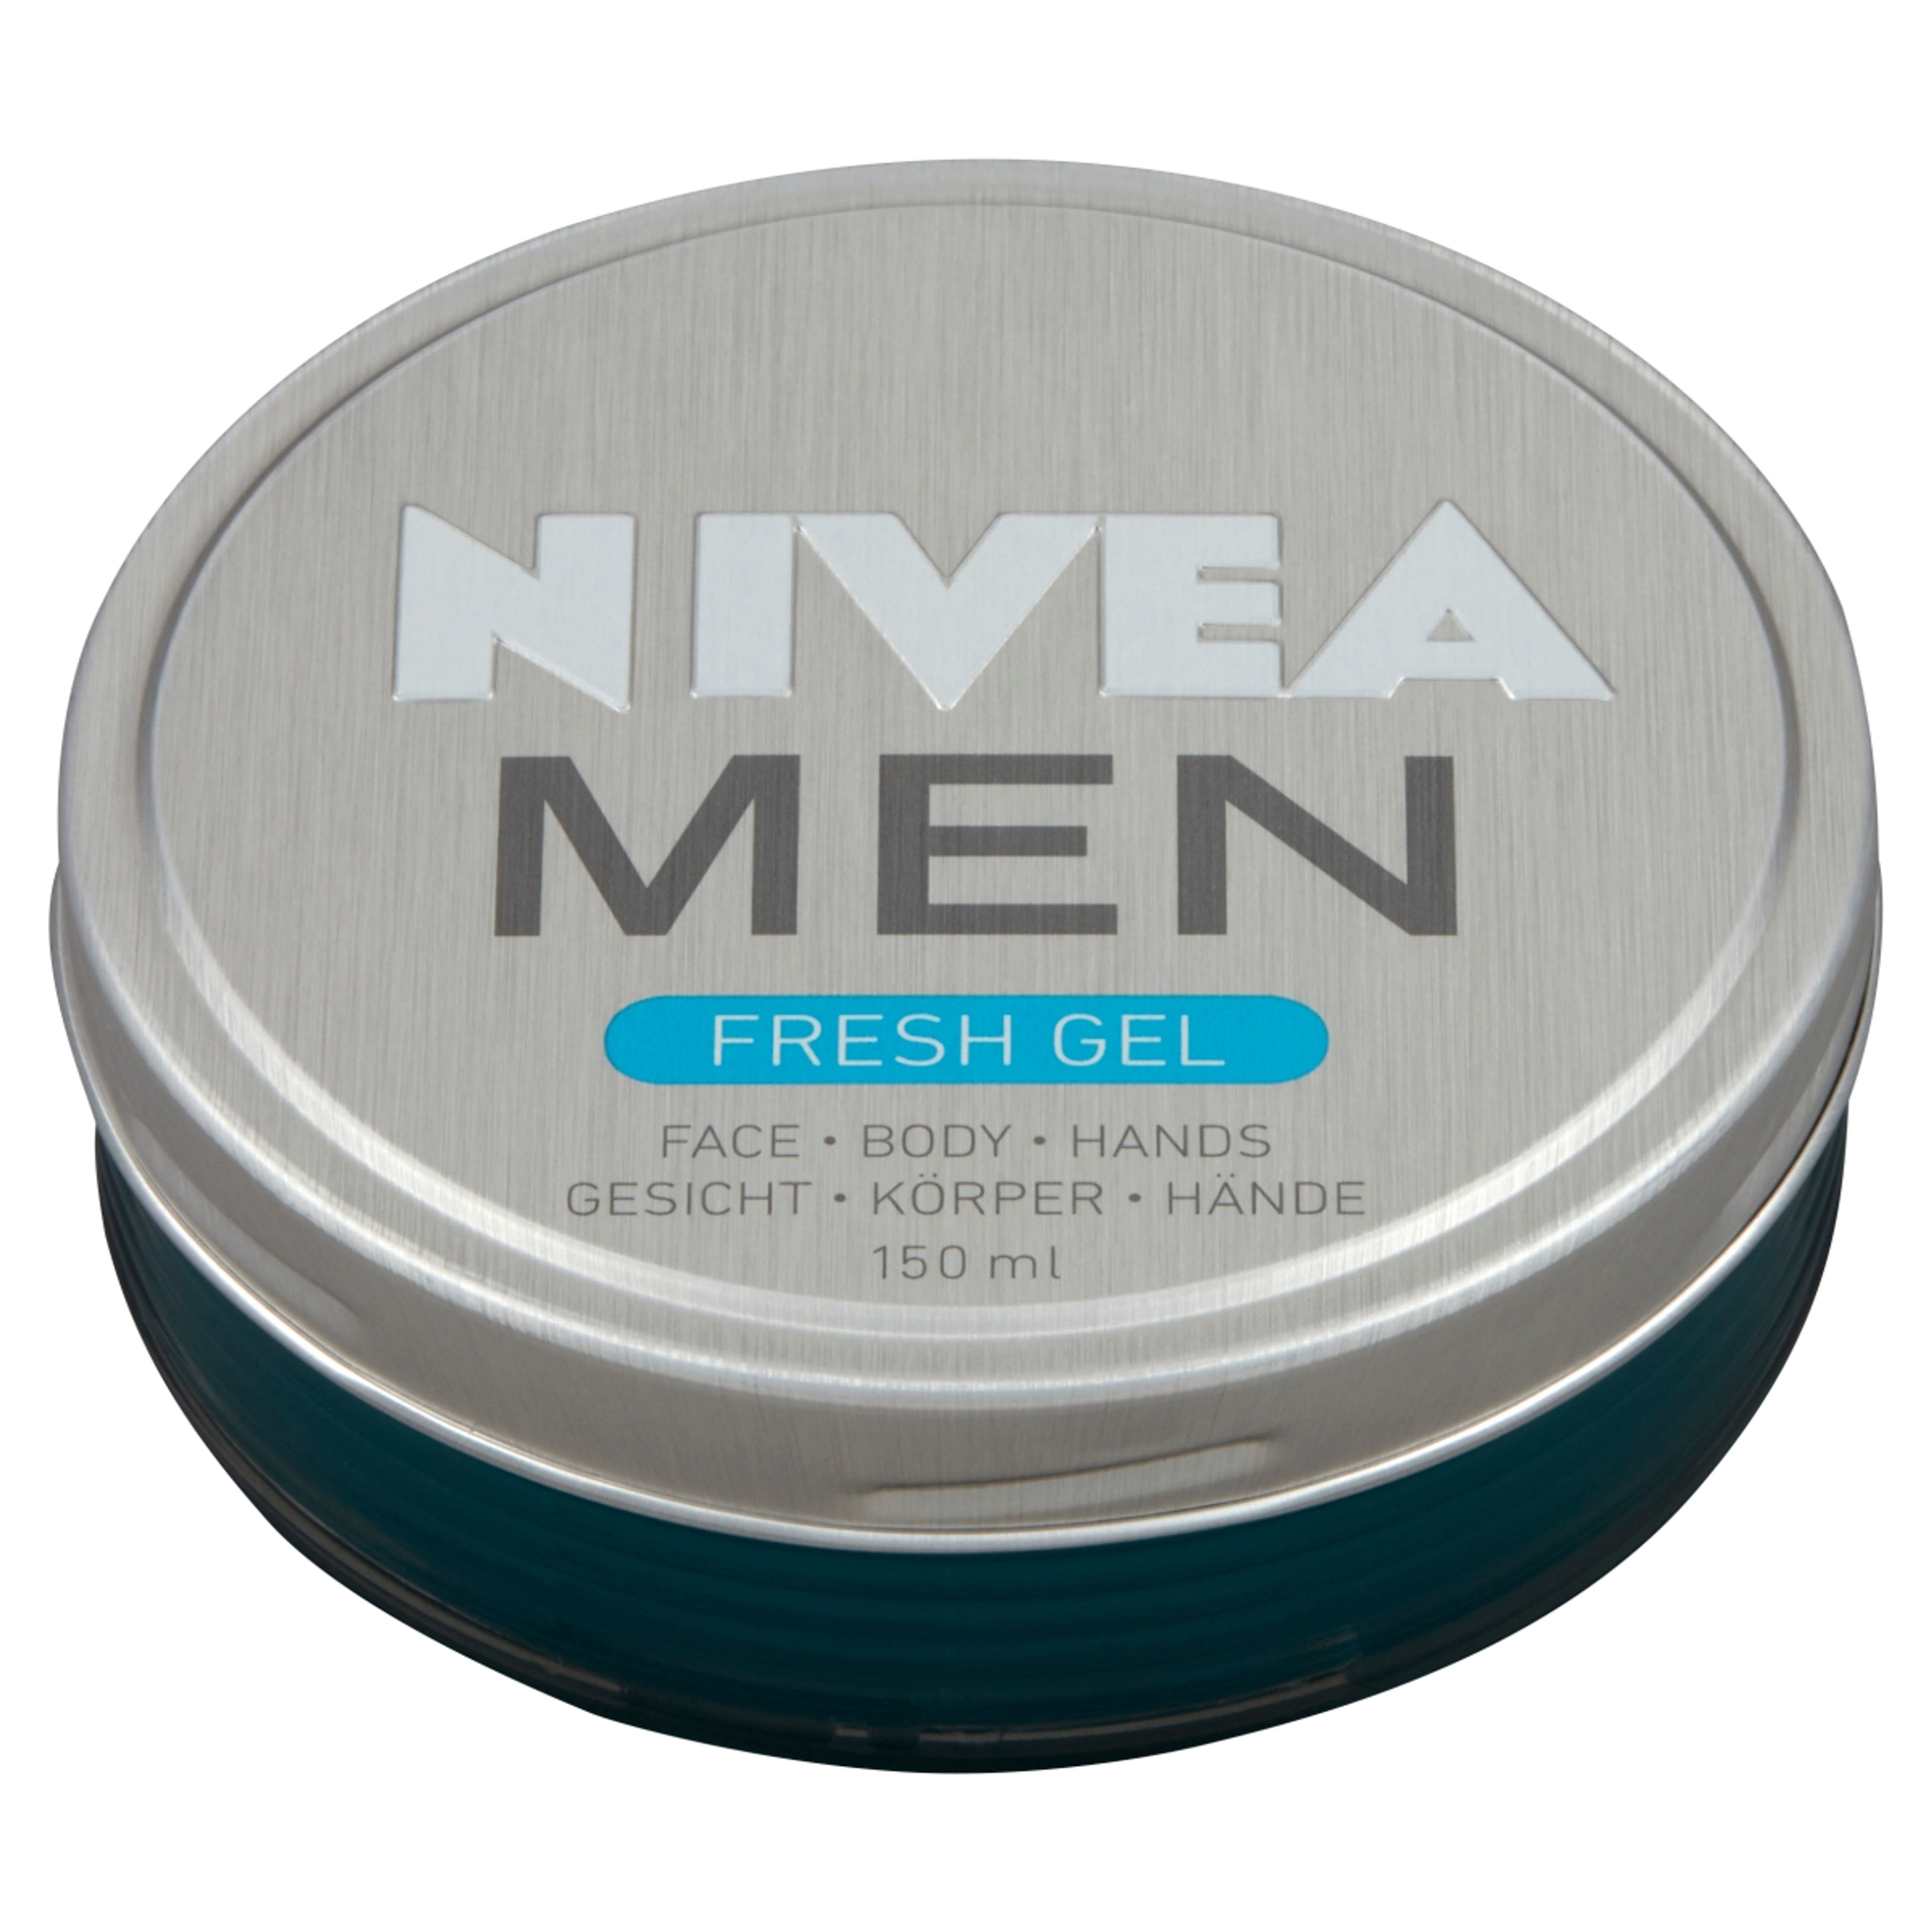 NIVEA MEN Fresh Gél - 150 ml-2